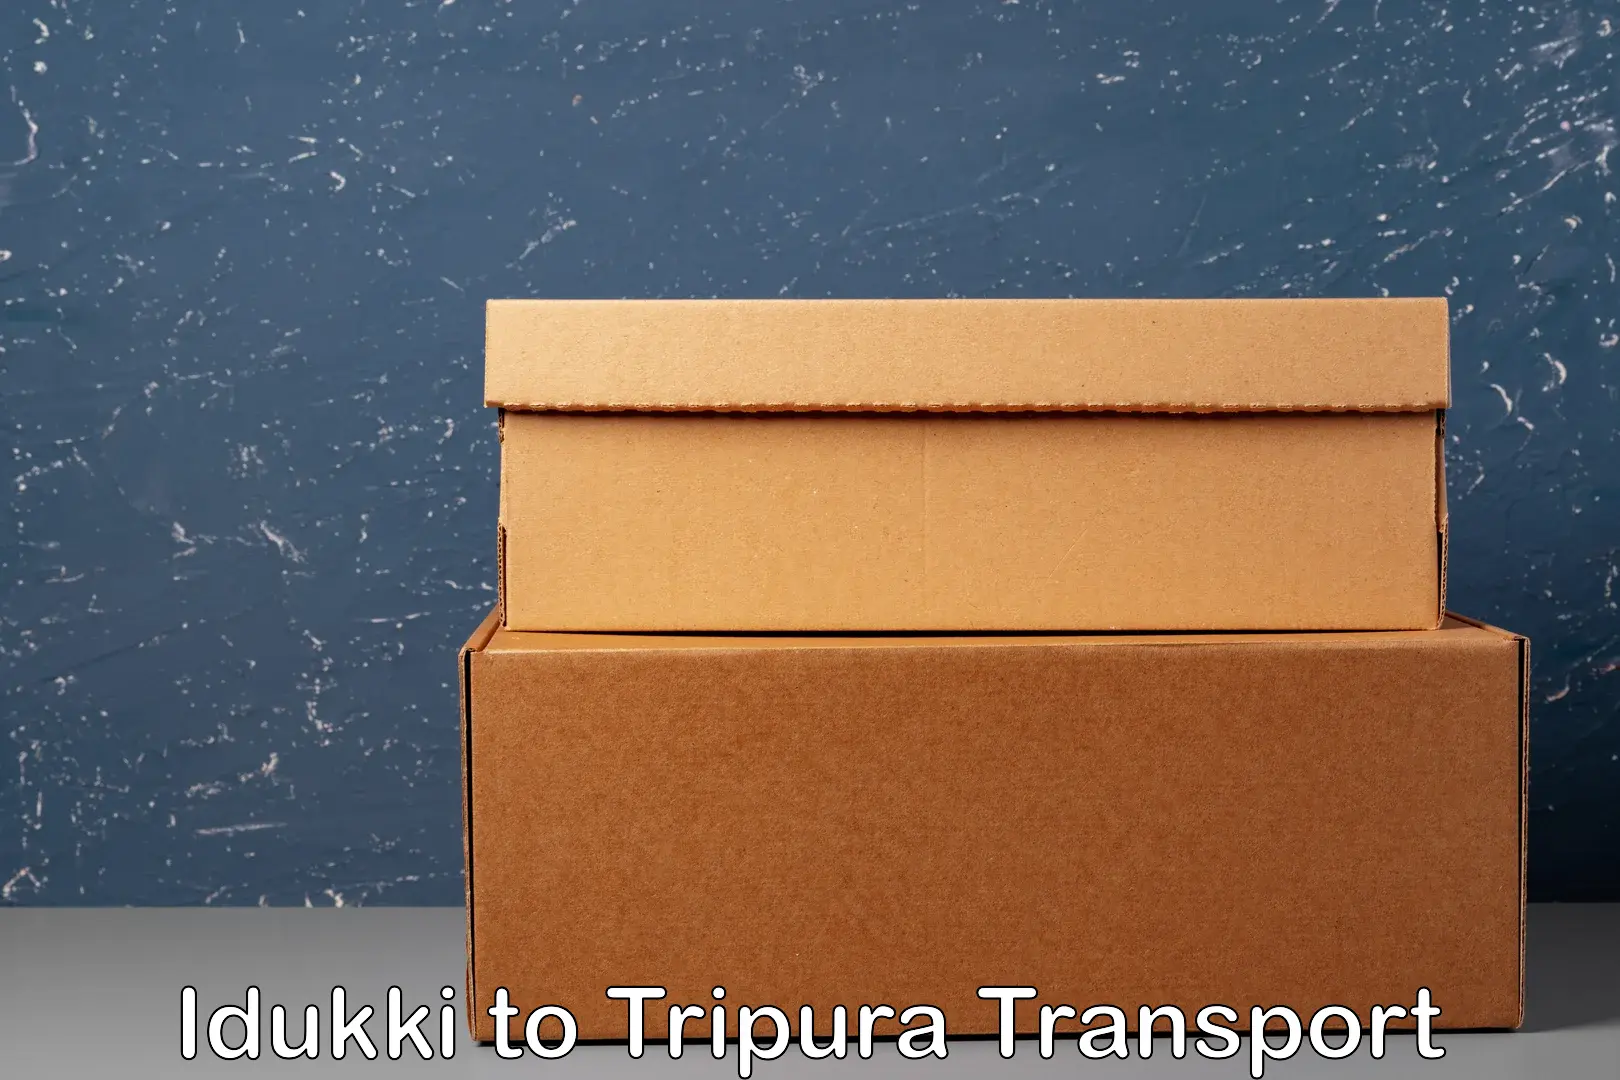 Door to door transport services Idukki to Tripura